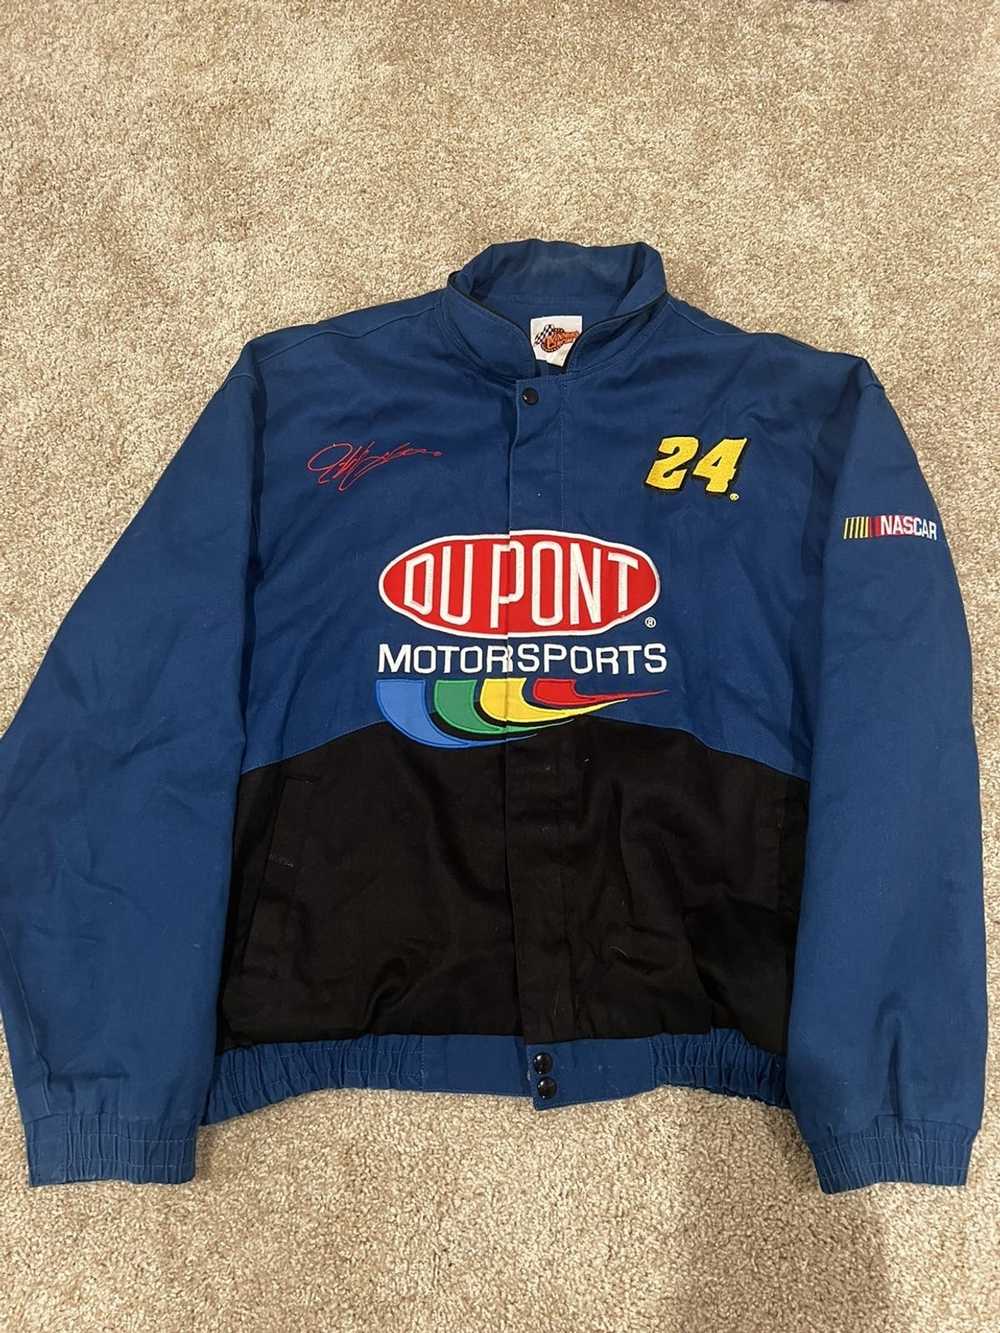 NASCAR × Vintage Vintage NASCAR Jacket - image 1